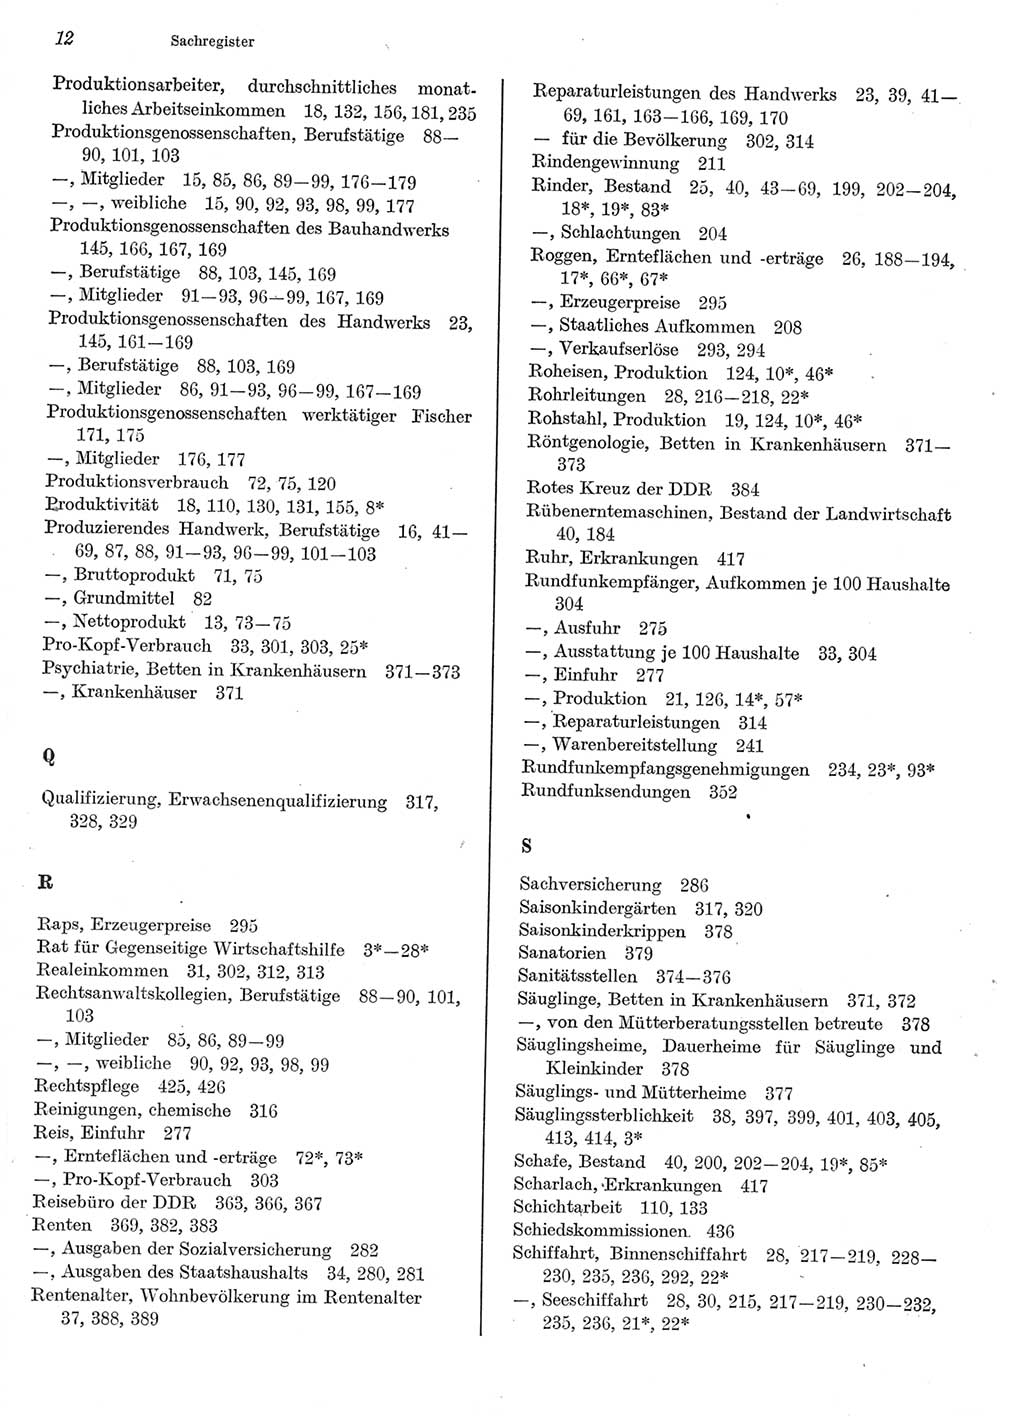 Statistisches Jahrbuch der Deutschen Demokratischen Republik (DDR) 1977, Seite 12 (Stat. Jb. DDR 1977, S. 12)